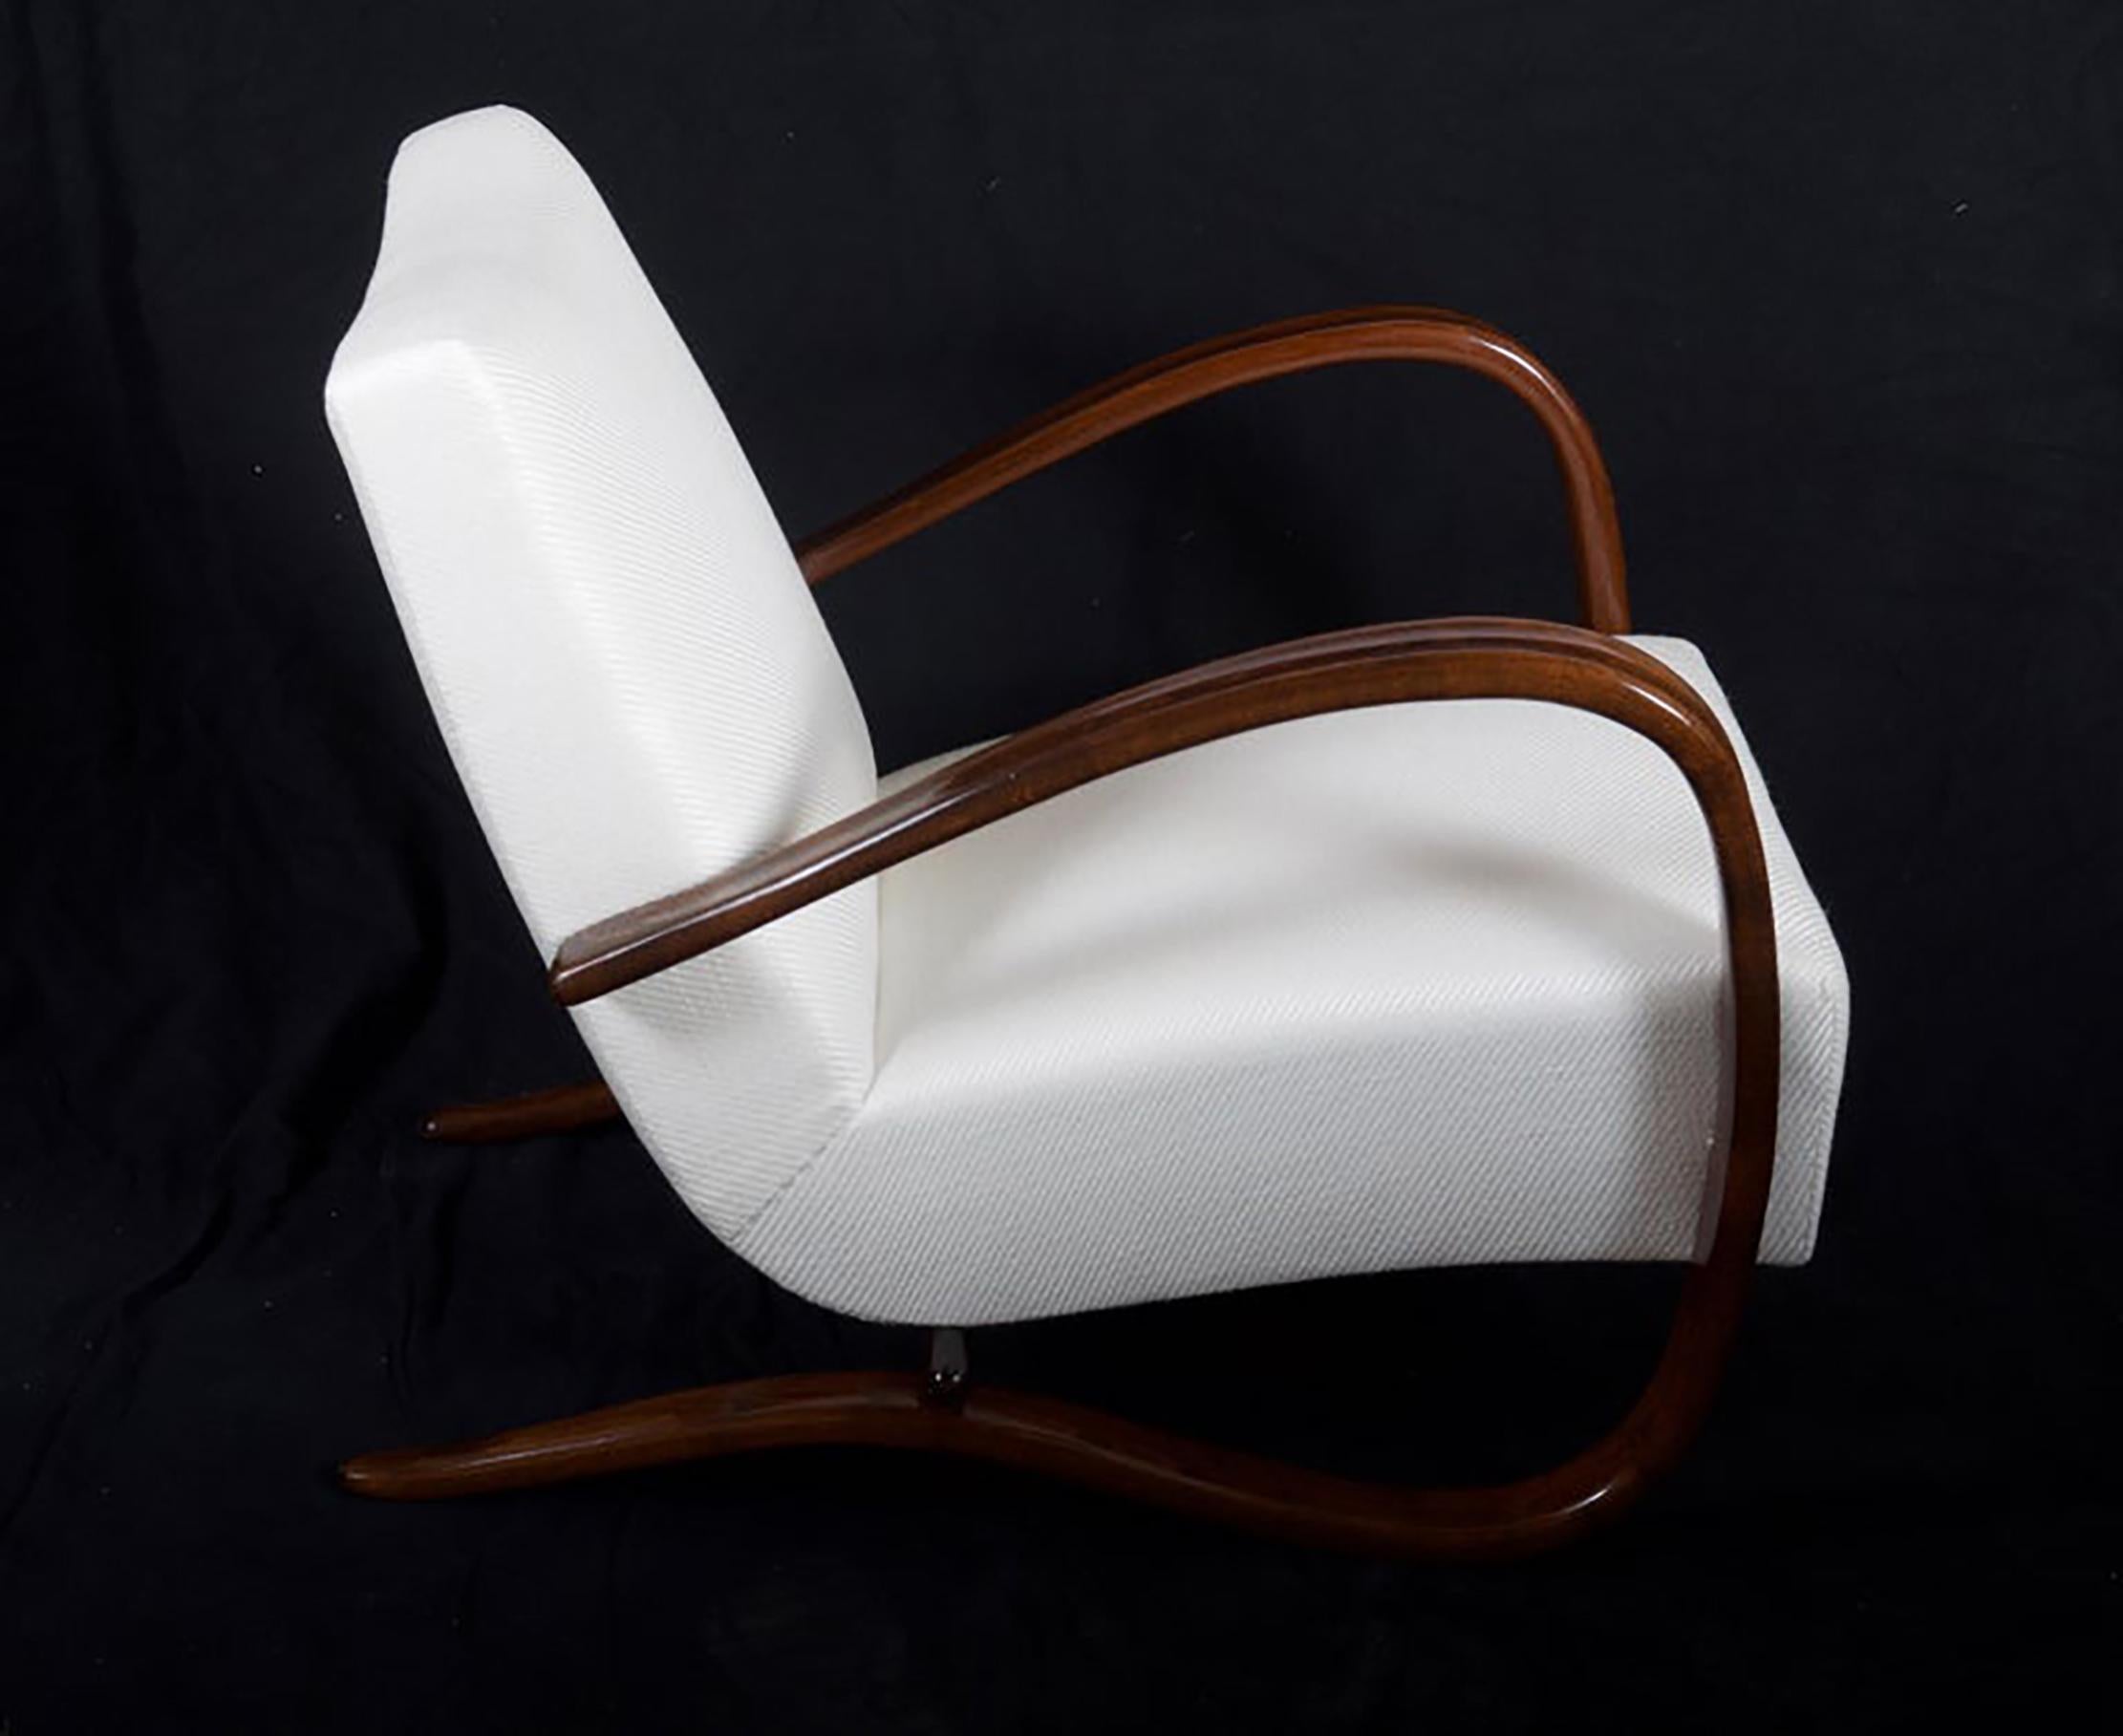 Bugholzsessel aus Buche, nussbaumfarben gebeizt, hergestellt von Thonet in den 1930er Jahren.
Hervorragend restauriert mit neuen Sitzfedern und mit Lelievre-Wollstoff gepolstert.
Andere Stoff- und Holzausführungen auf Anfrage möglich
Auf Anfrage